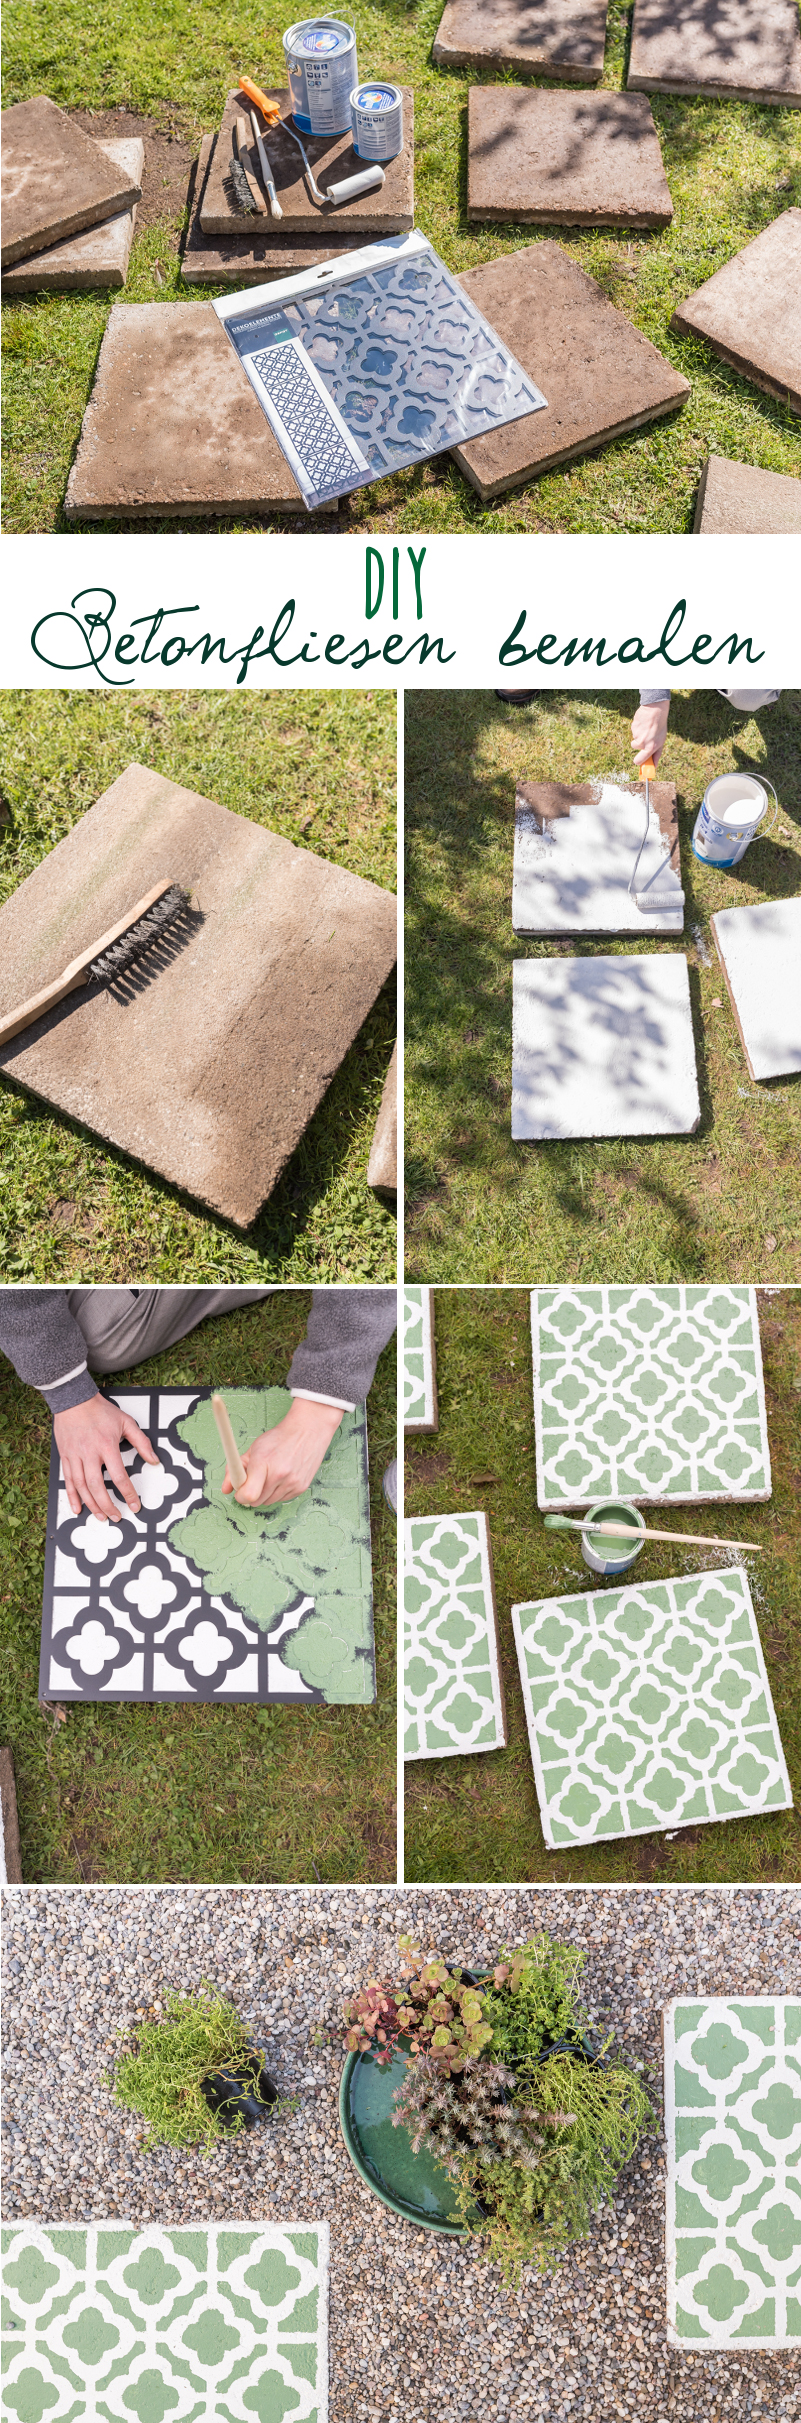 DIY Anleitung für selbstgemachte upcycling Betonfliesen im marokkanischen Look mit Betonfarbe und Waschbetonplatten als dekorative Gehwegplatten für den Garten